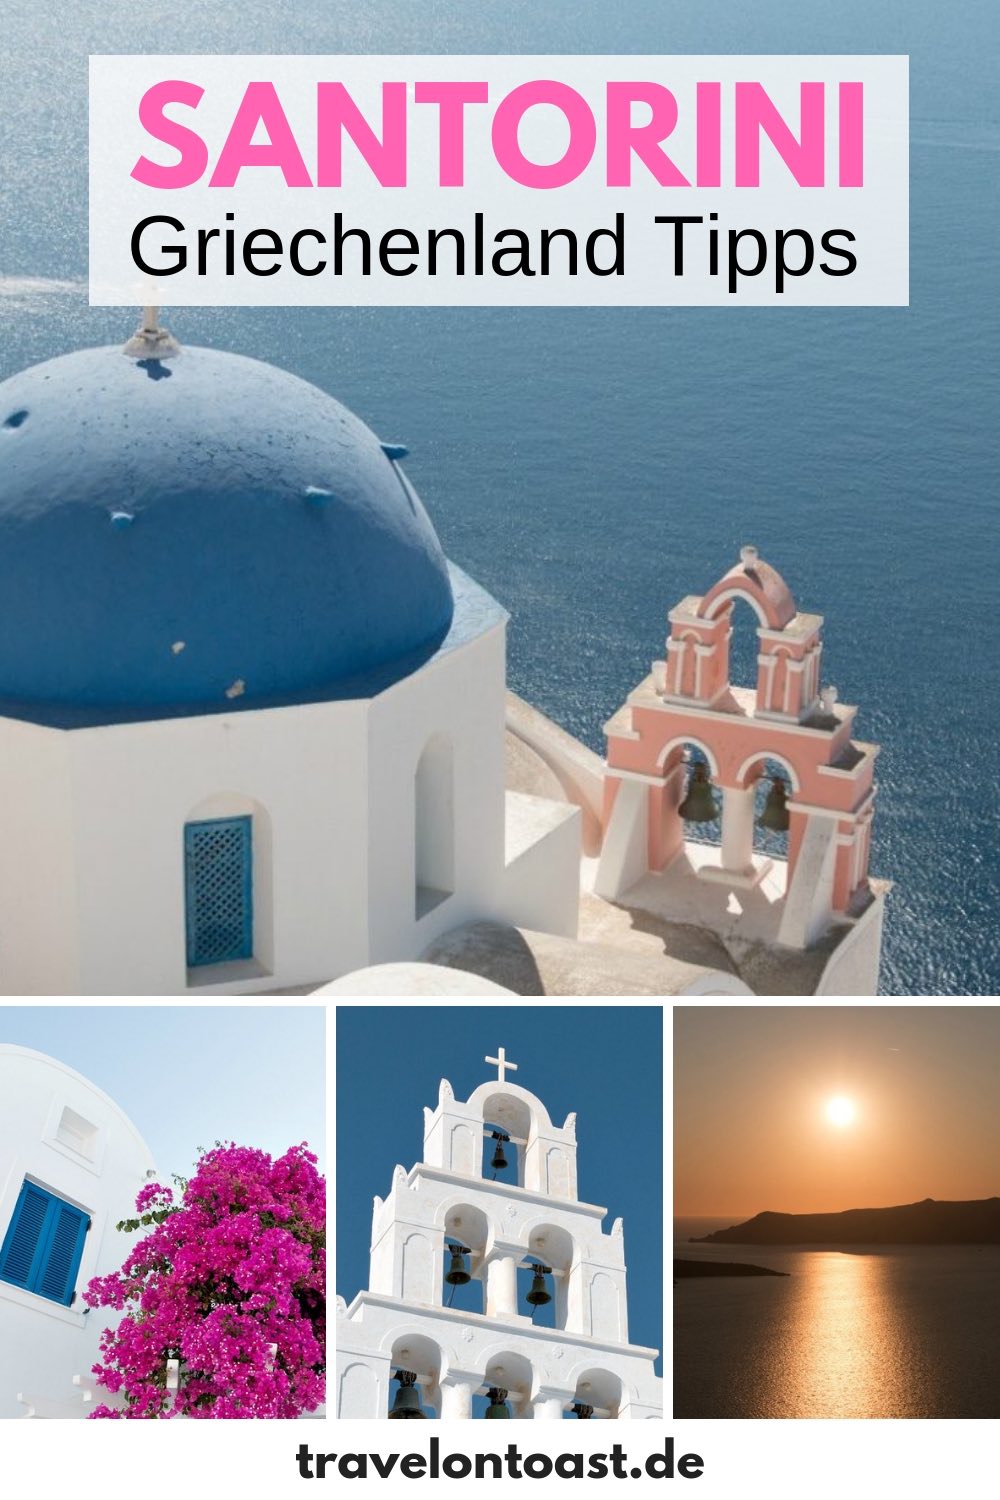 Santorini Griekenland (Cycladen Griekenland): De 13 beste Santorini-tips plus ongeveer 40 foto's van Santorini Griekenland - inclusief bezienswaardigheden zoals koepelkerken 